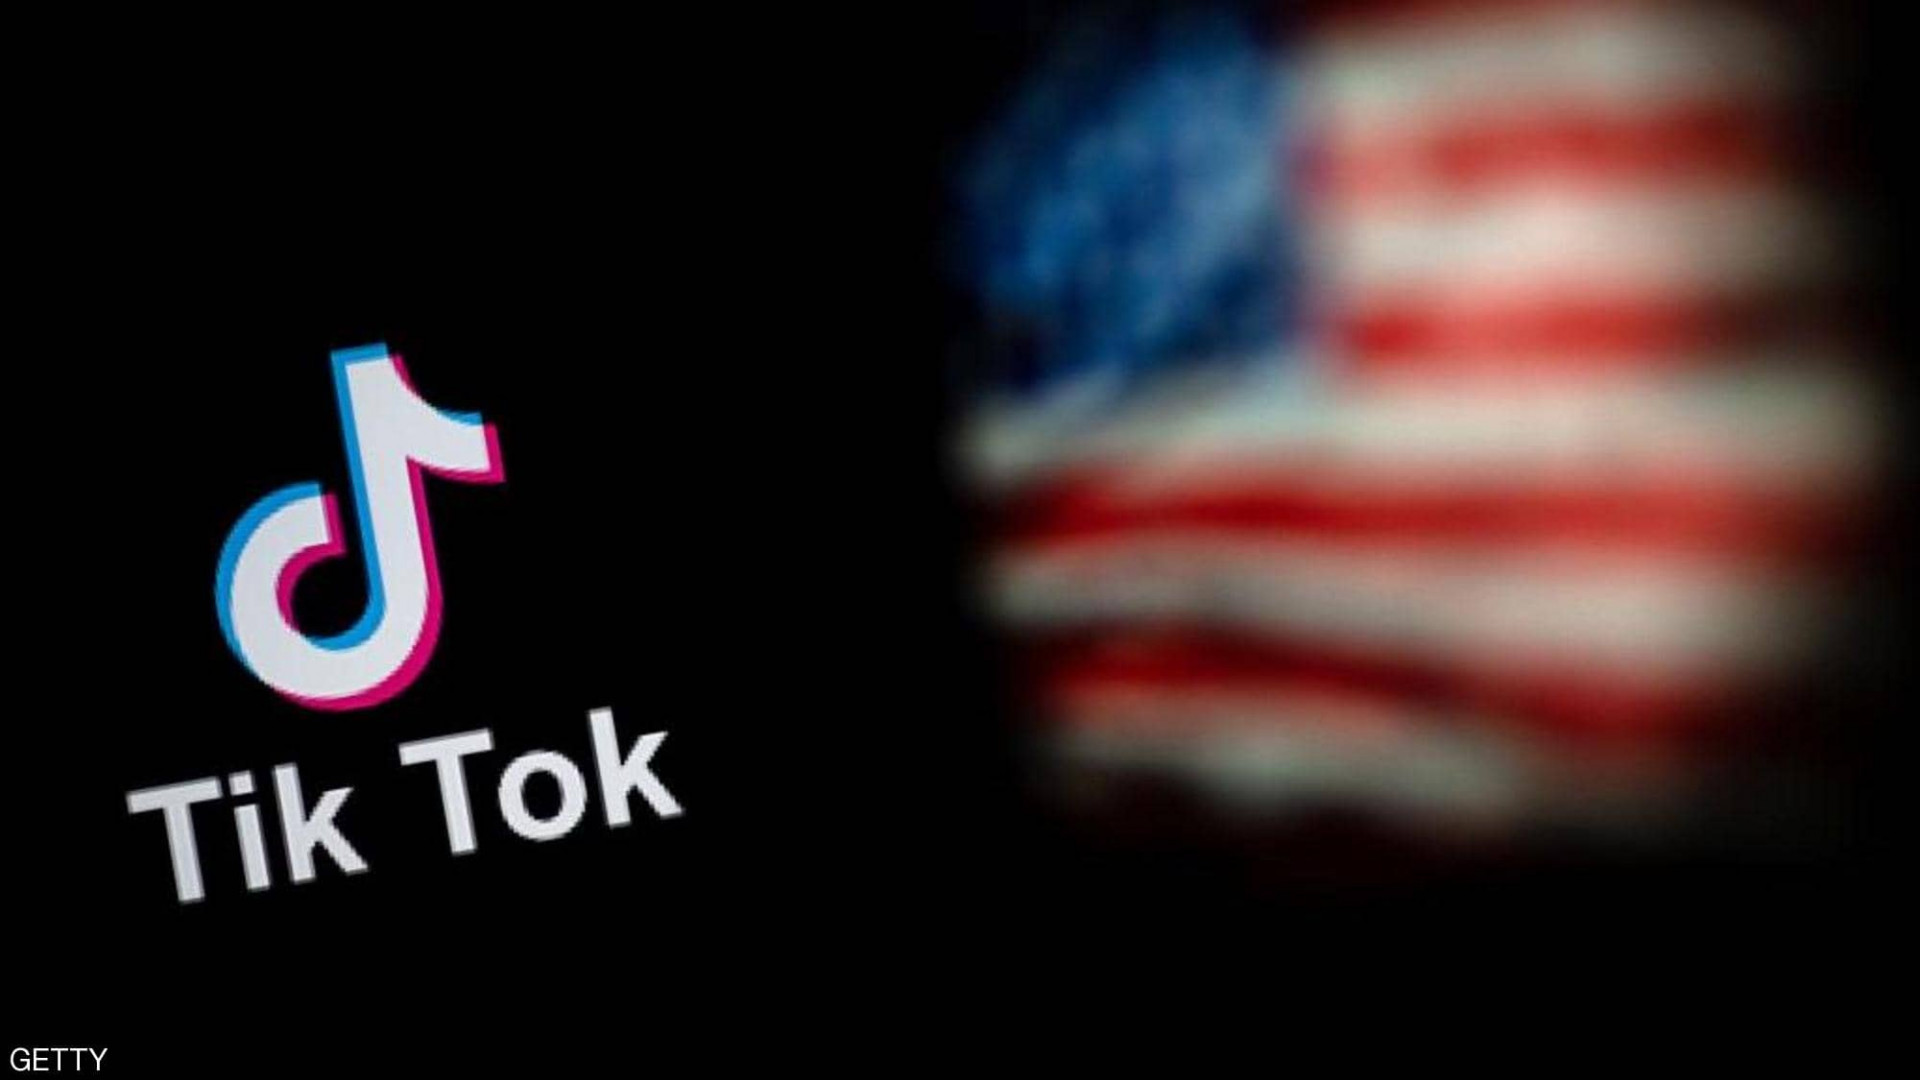 الاستخبارات الأمريكية: تيك توك تهديد حقيقي للأمن القومي